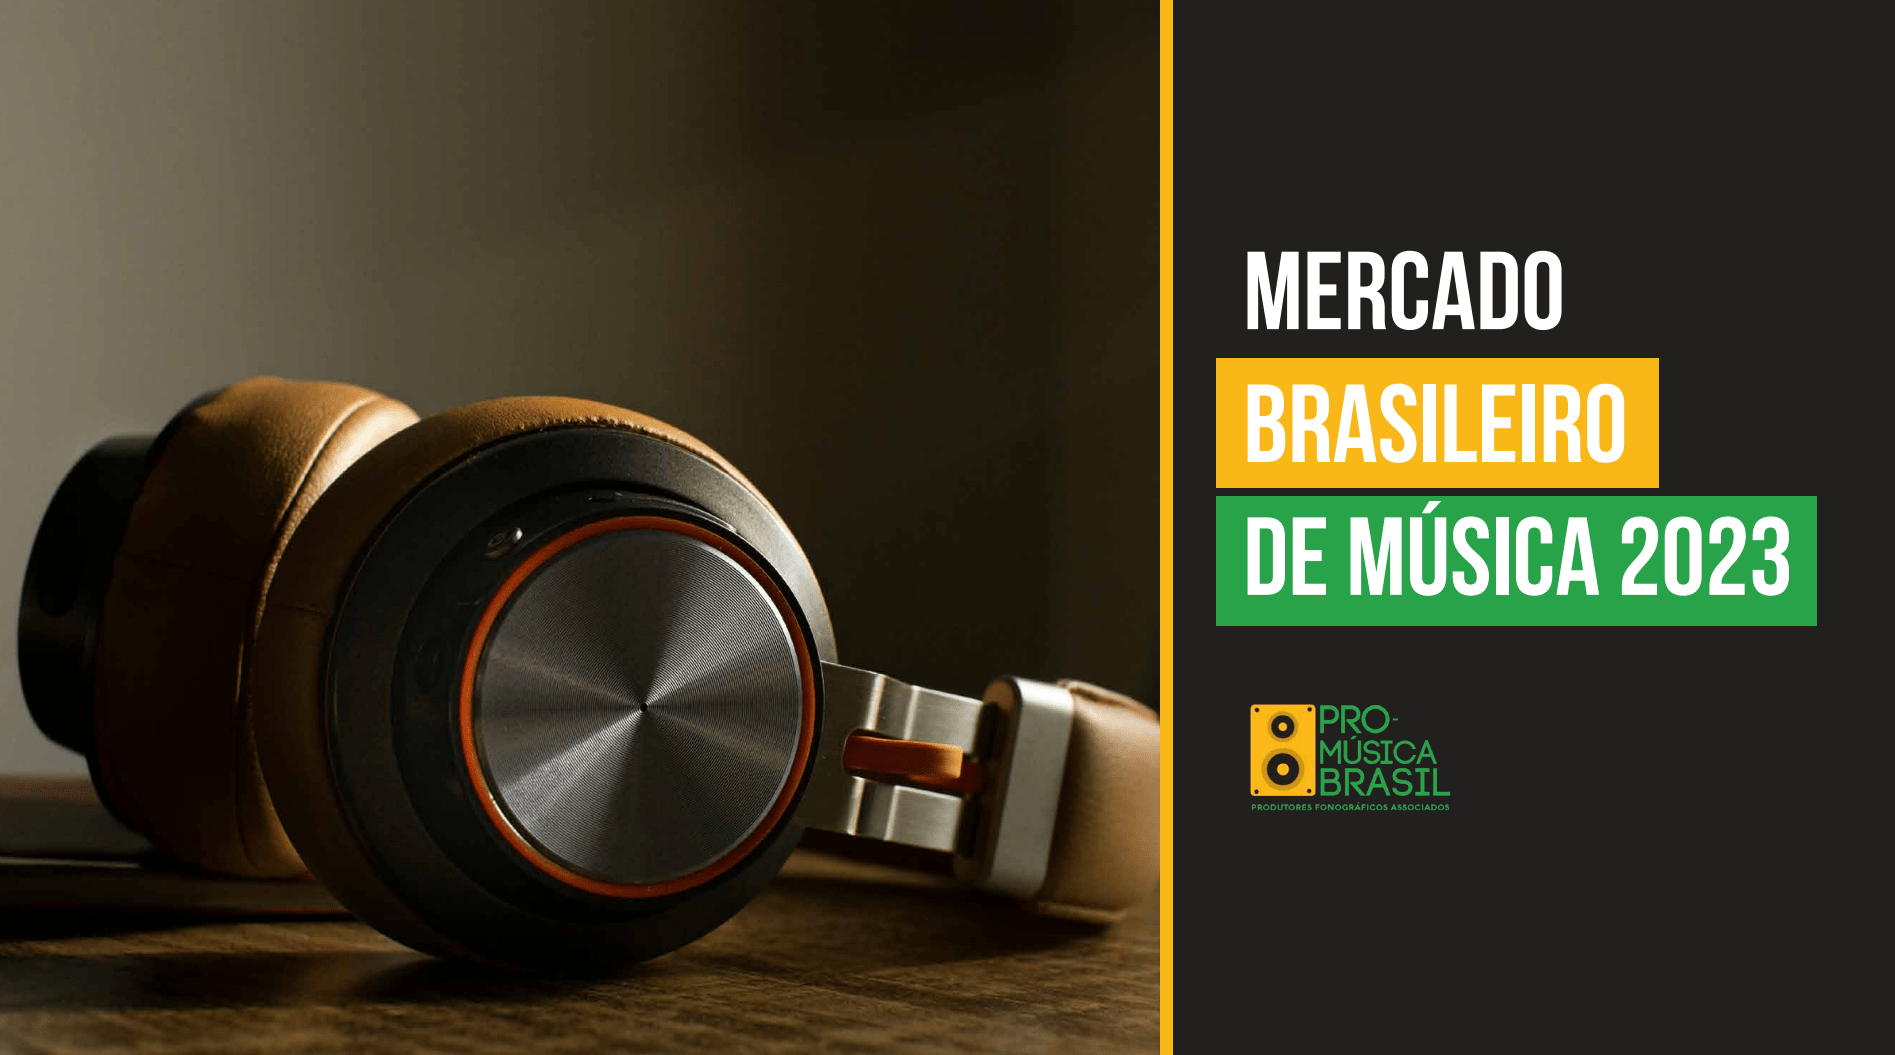 Mercado fonográfico brasileiro: faturamento de R$ 2,9 bi em 2023